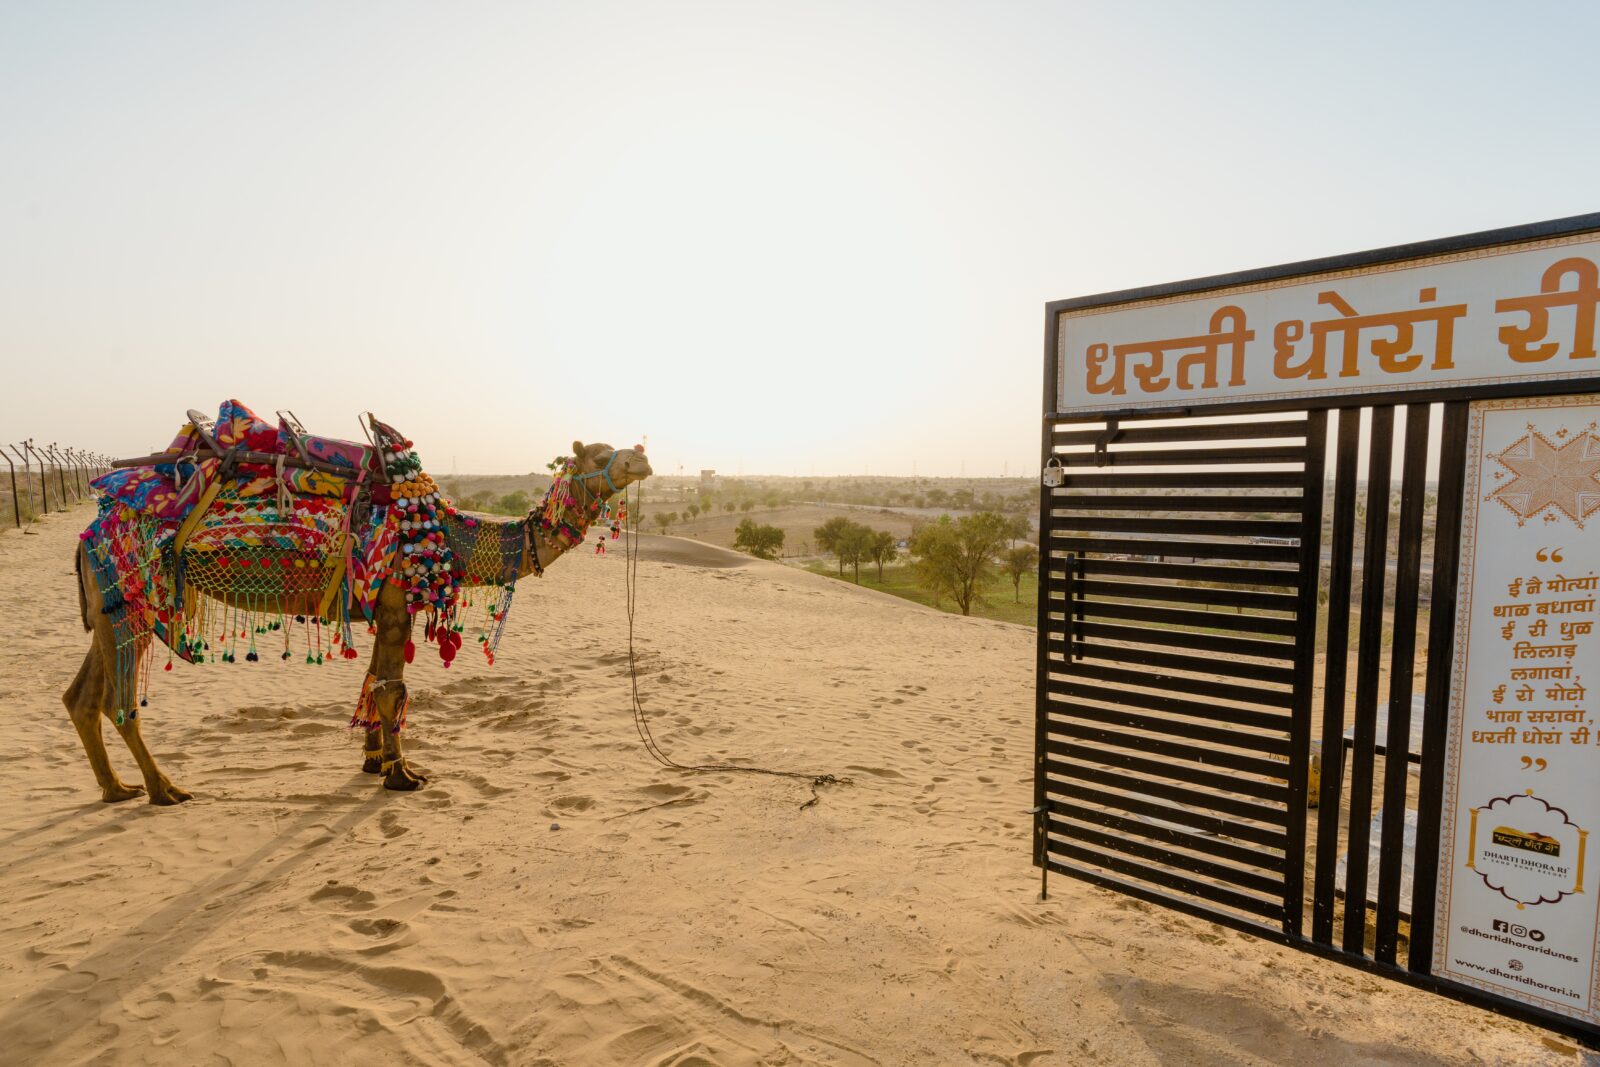 sand dune & camel safari at dharti dhora ri resort in bikaner